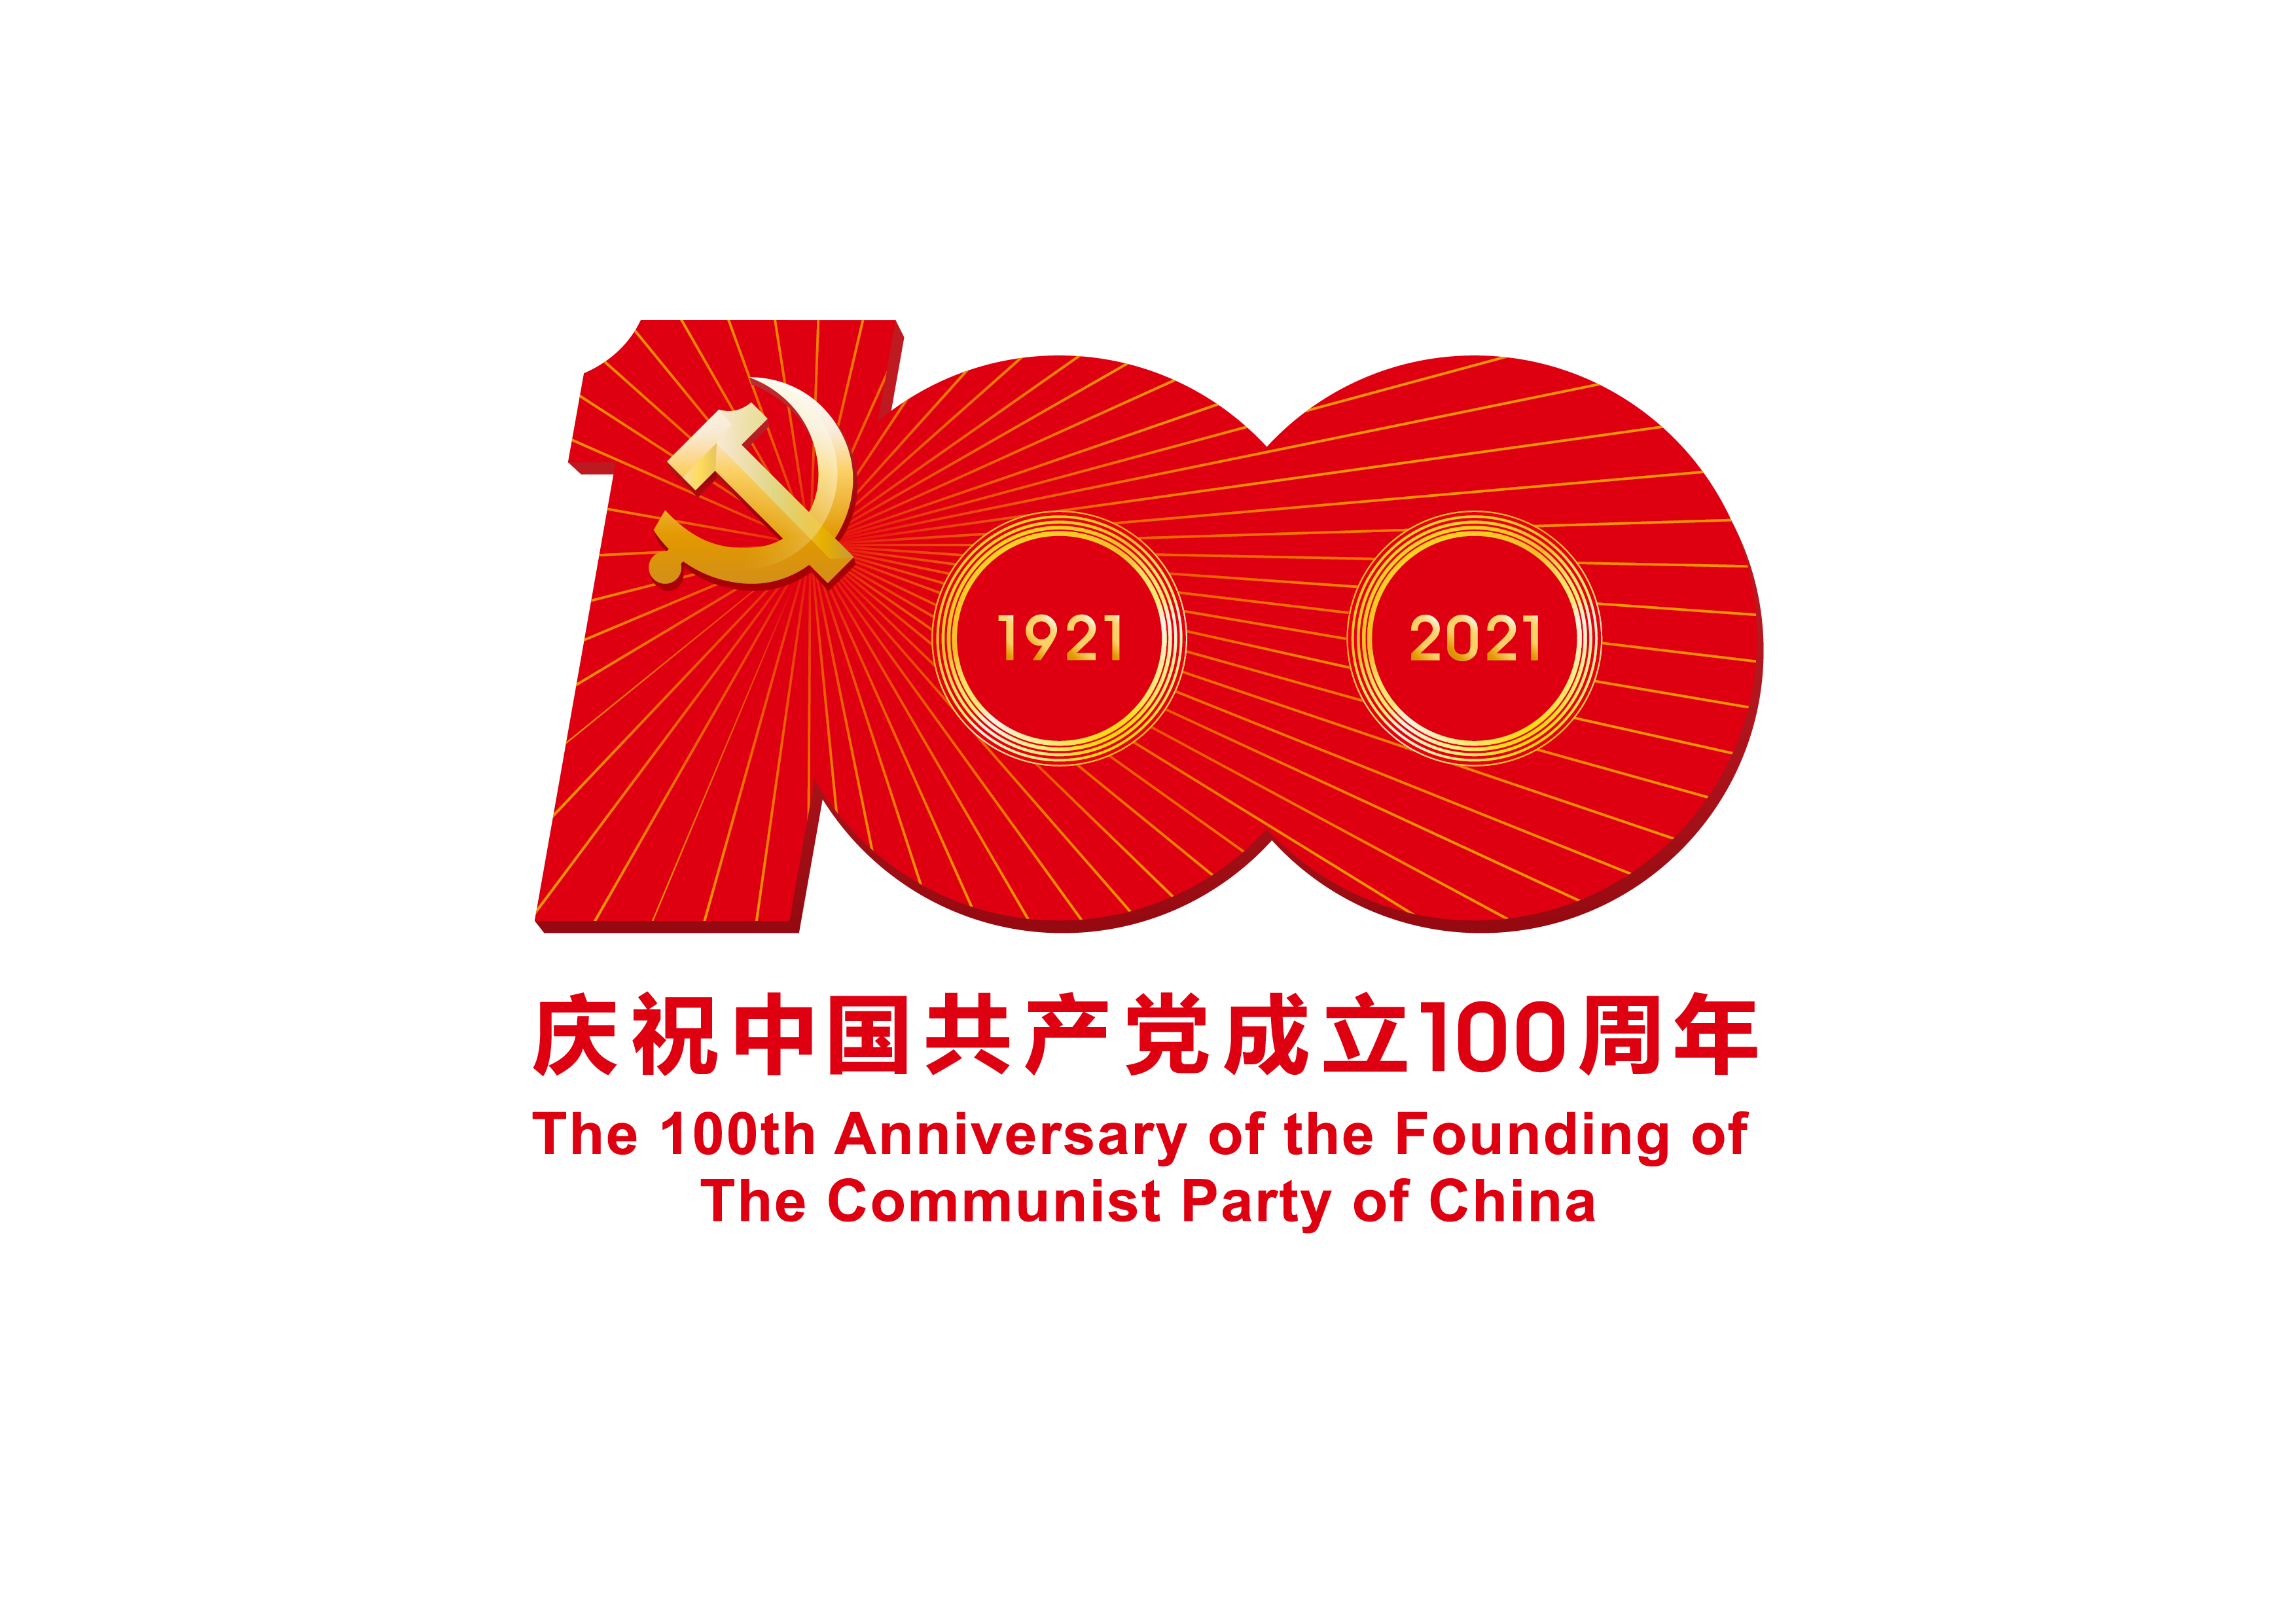 中国共产党成立100周年庆祝活动标识-PNG格式.png